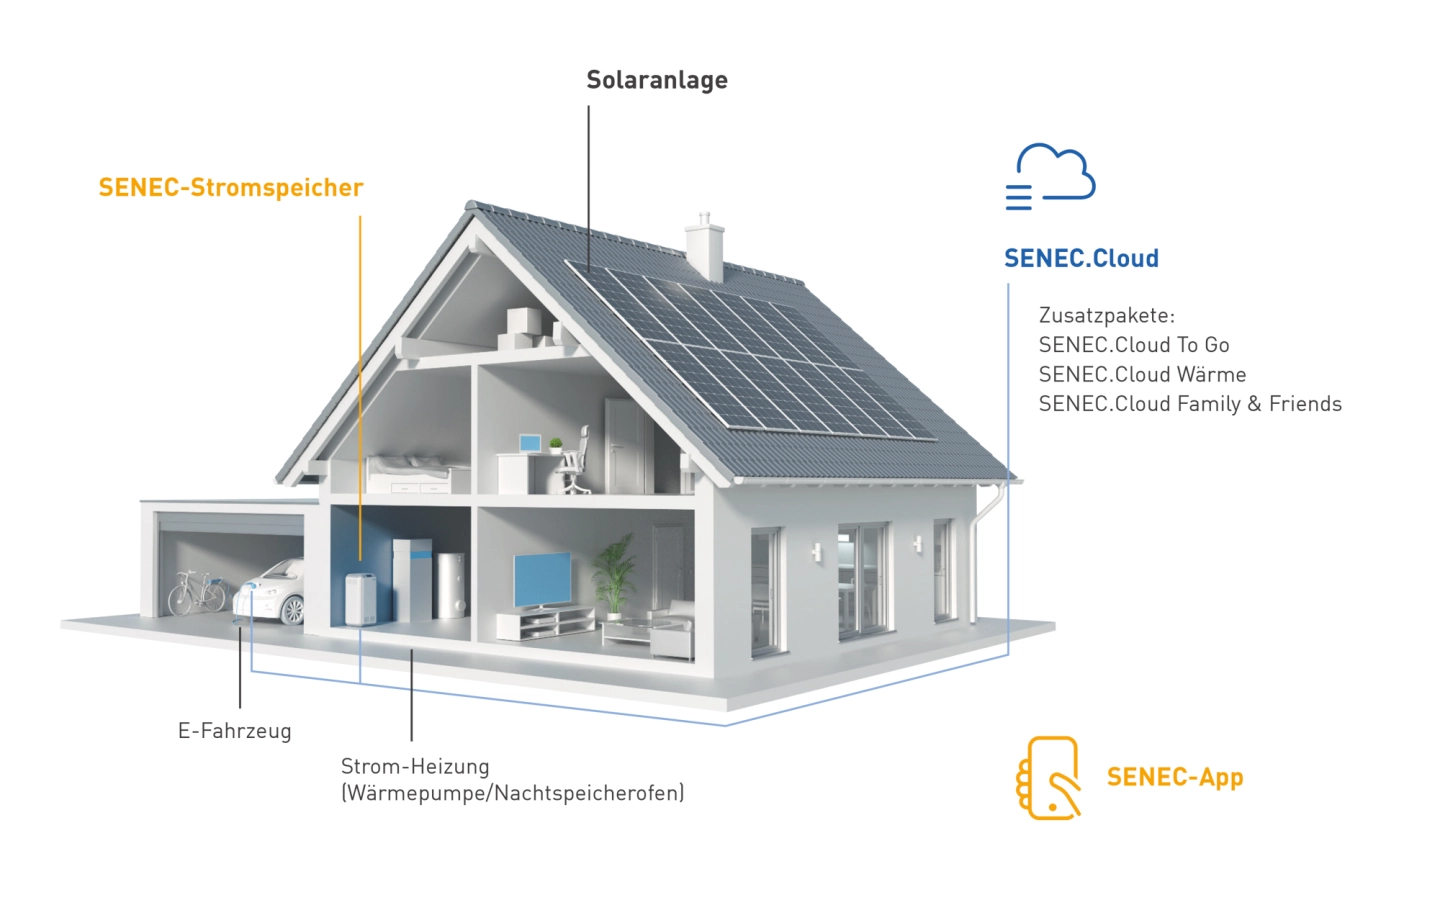 Grundlagen: Wie funktioniert eine Solaranlage? - Solarbringer